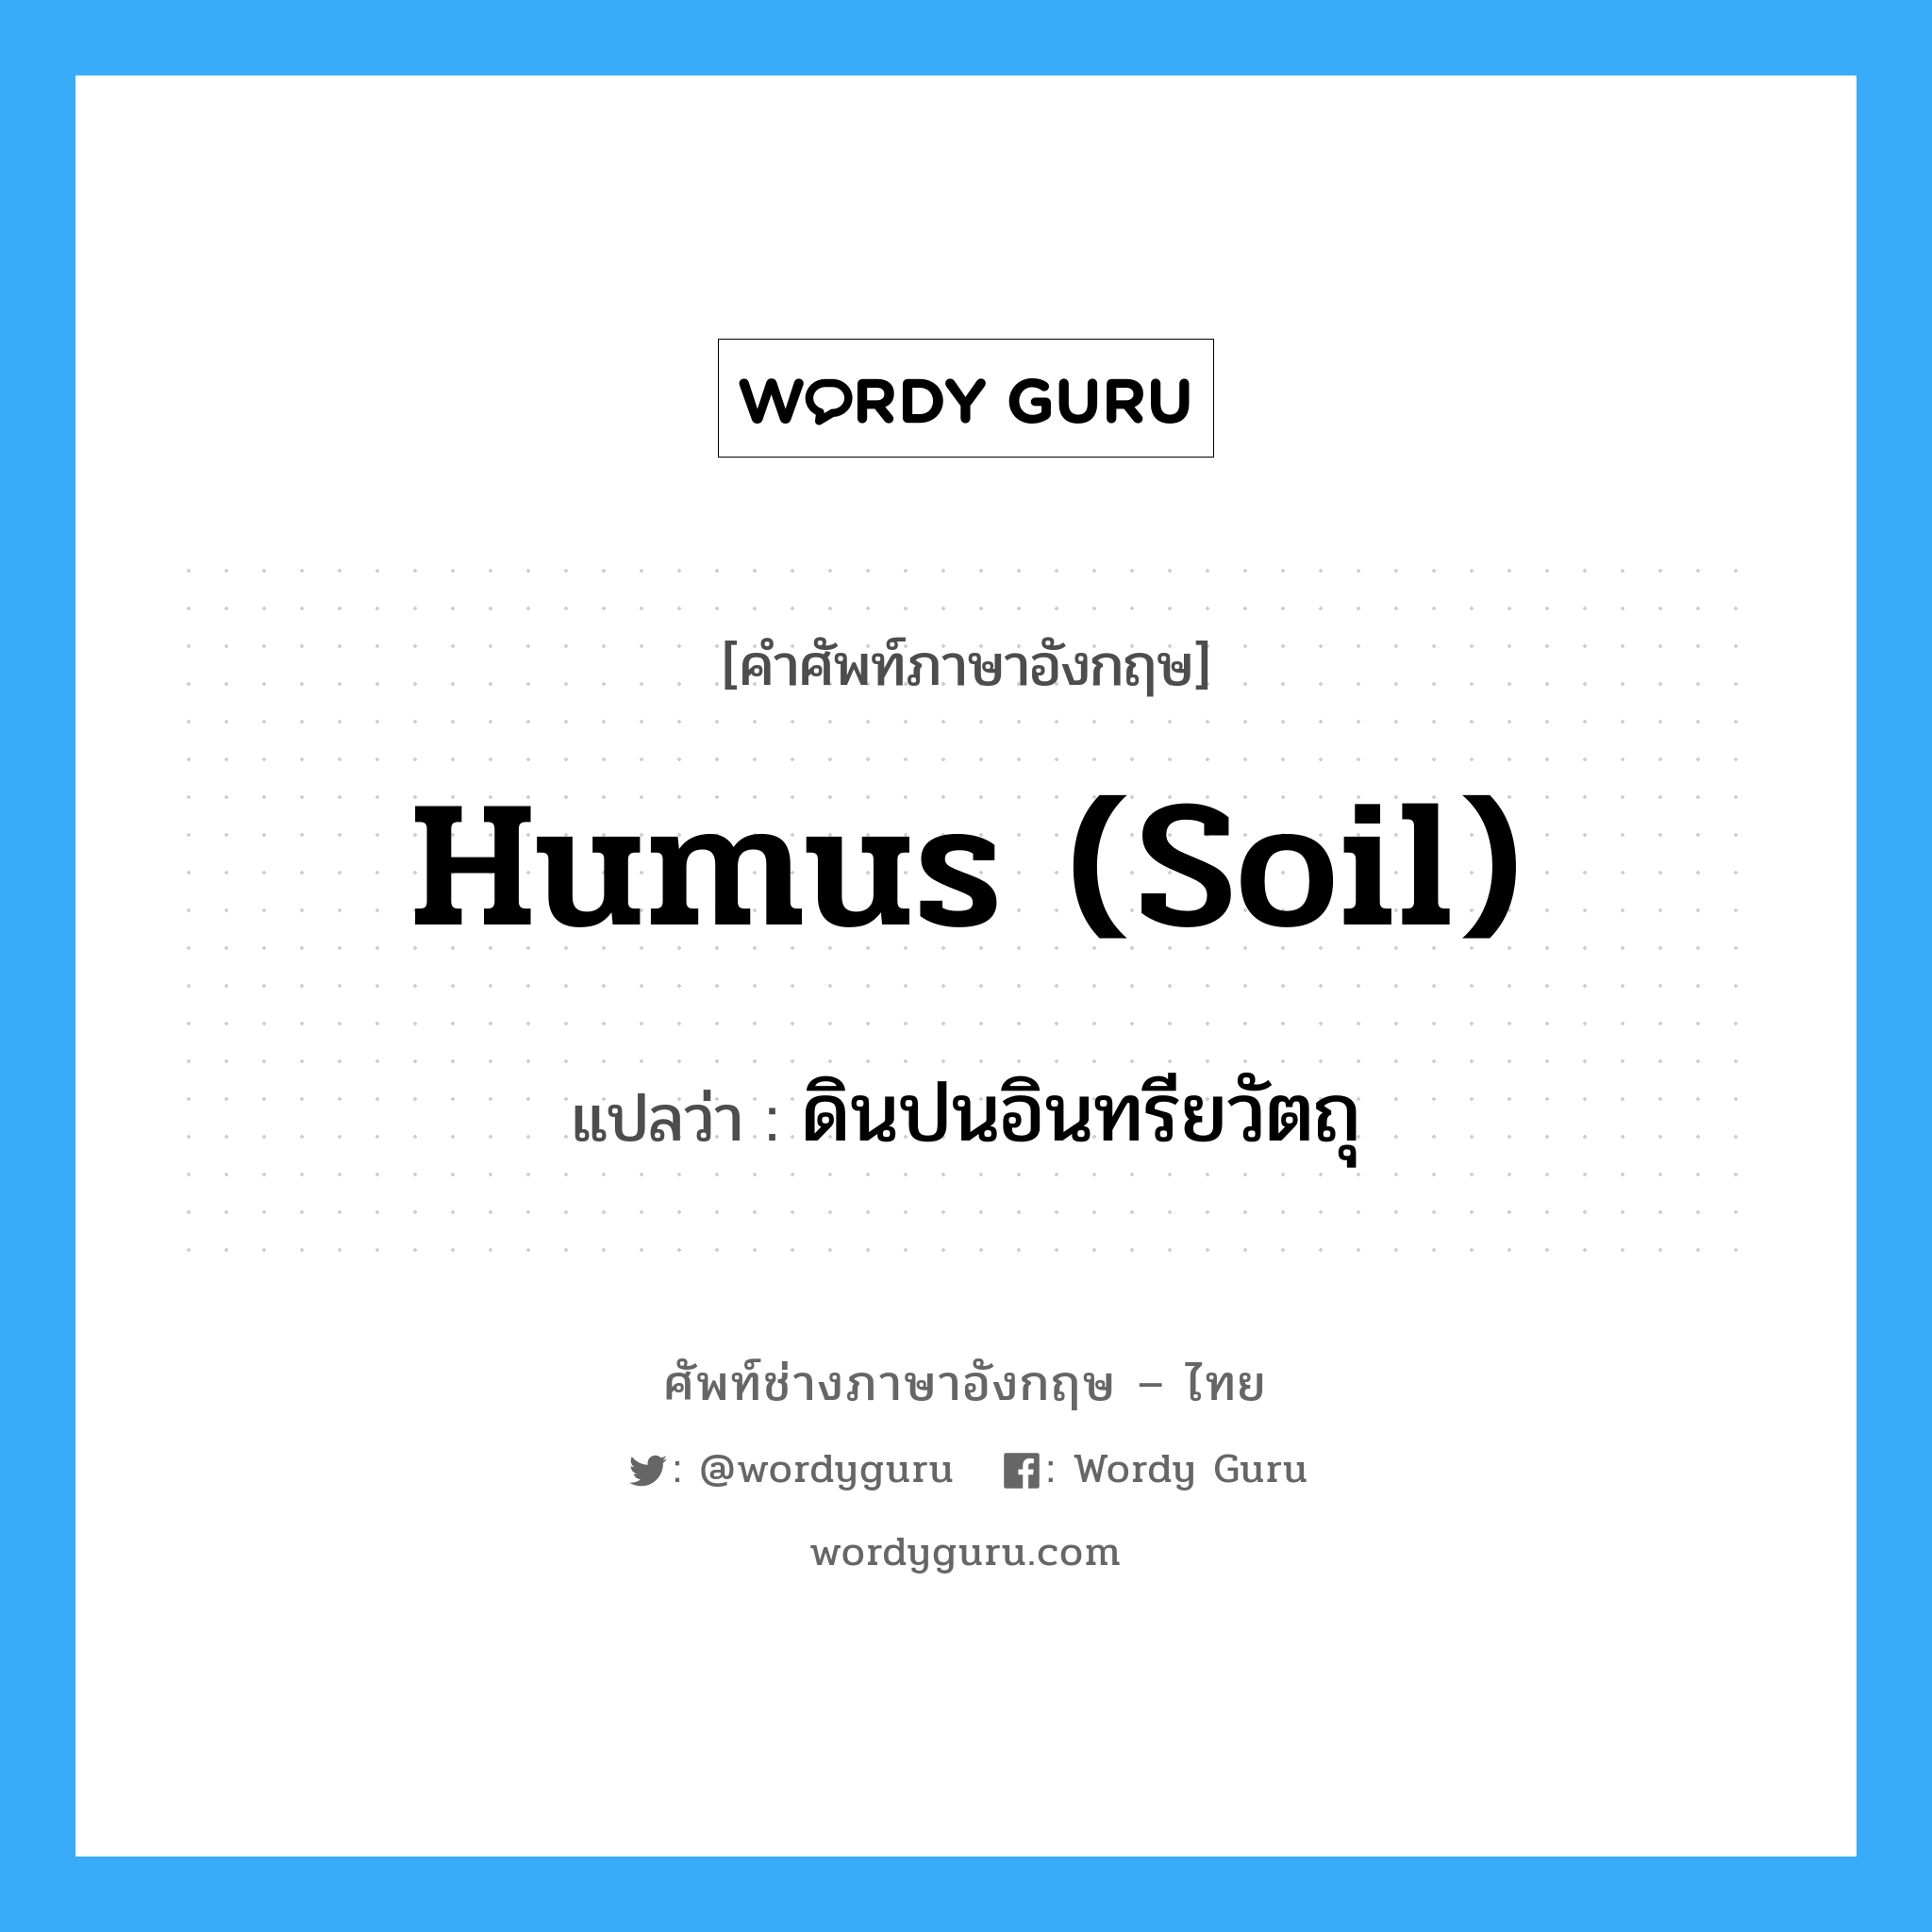 humus (soil) แปลว่า?, คำศัพท์ช่างภาษาอังกฤษ - ไทย humus (soil) คำศัพท์ภาษาอังกฤษ humus (soil) แปลว่า ดินปนอินทรียวัตถุ